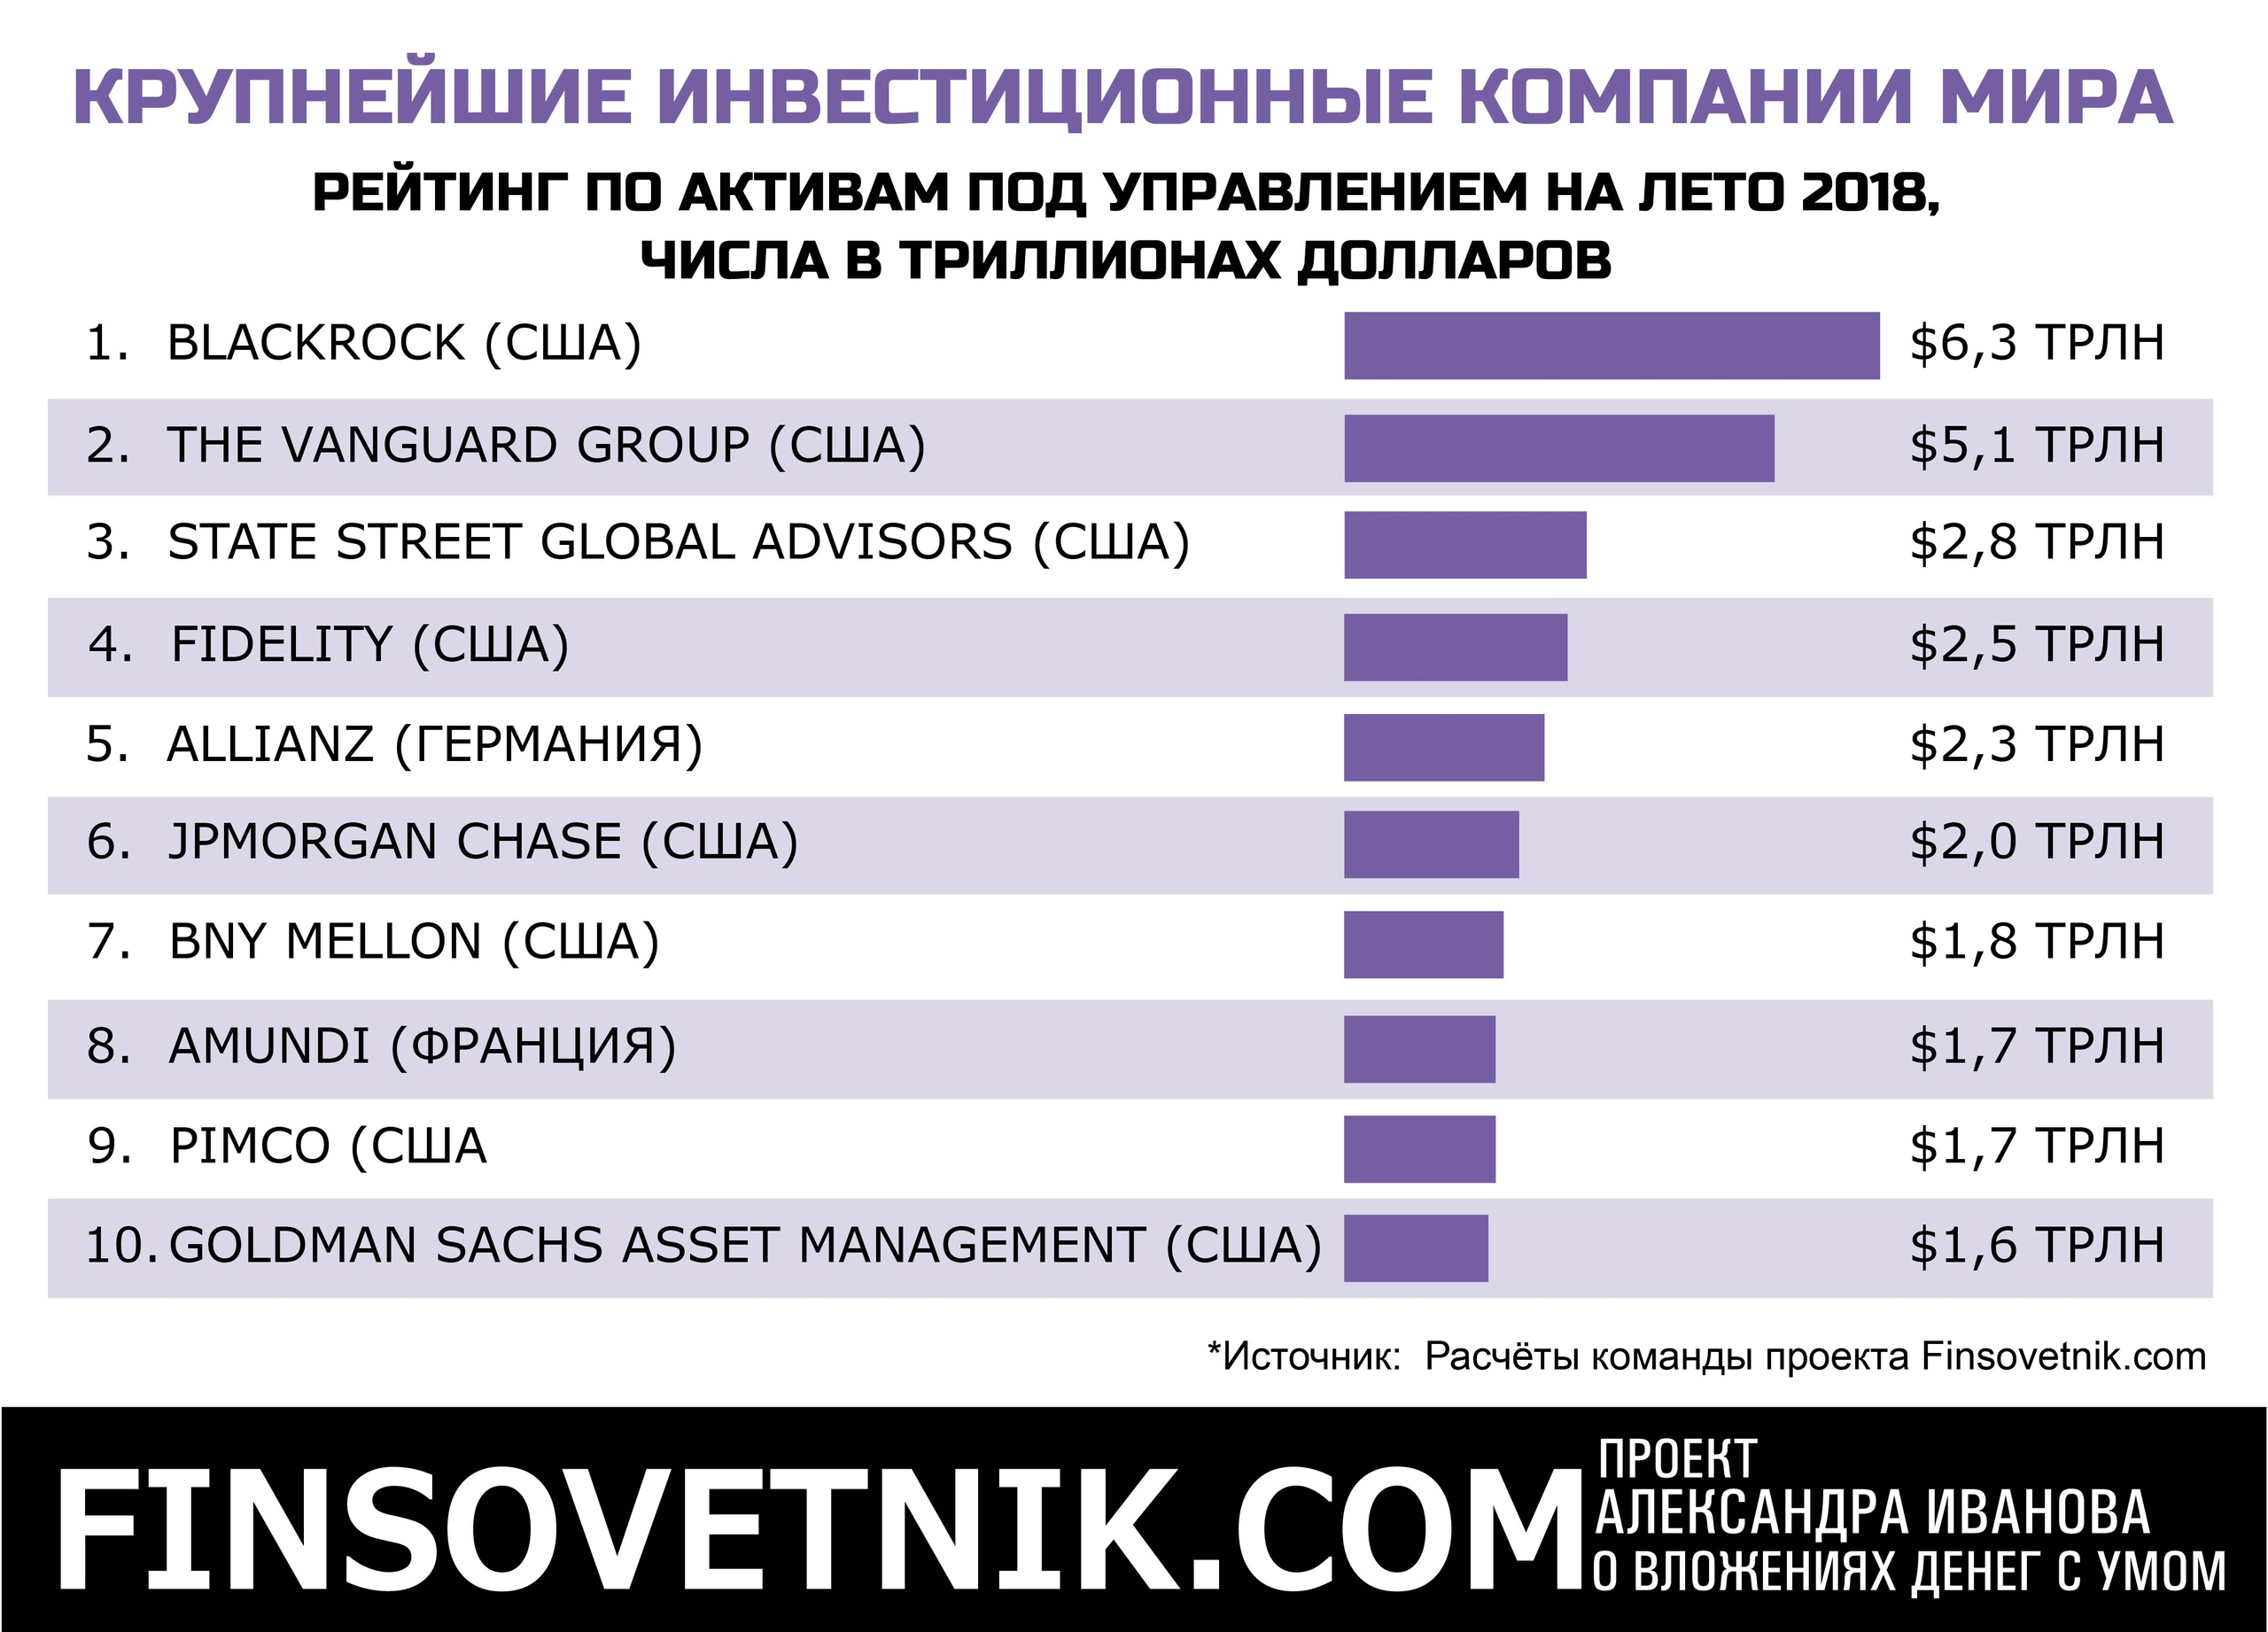 Приму в рейтингах. Крупные инвестиционные компании России. Крупнейшие инвестиционные компании России.